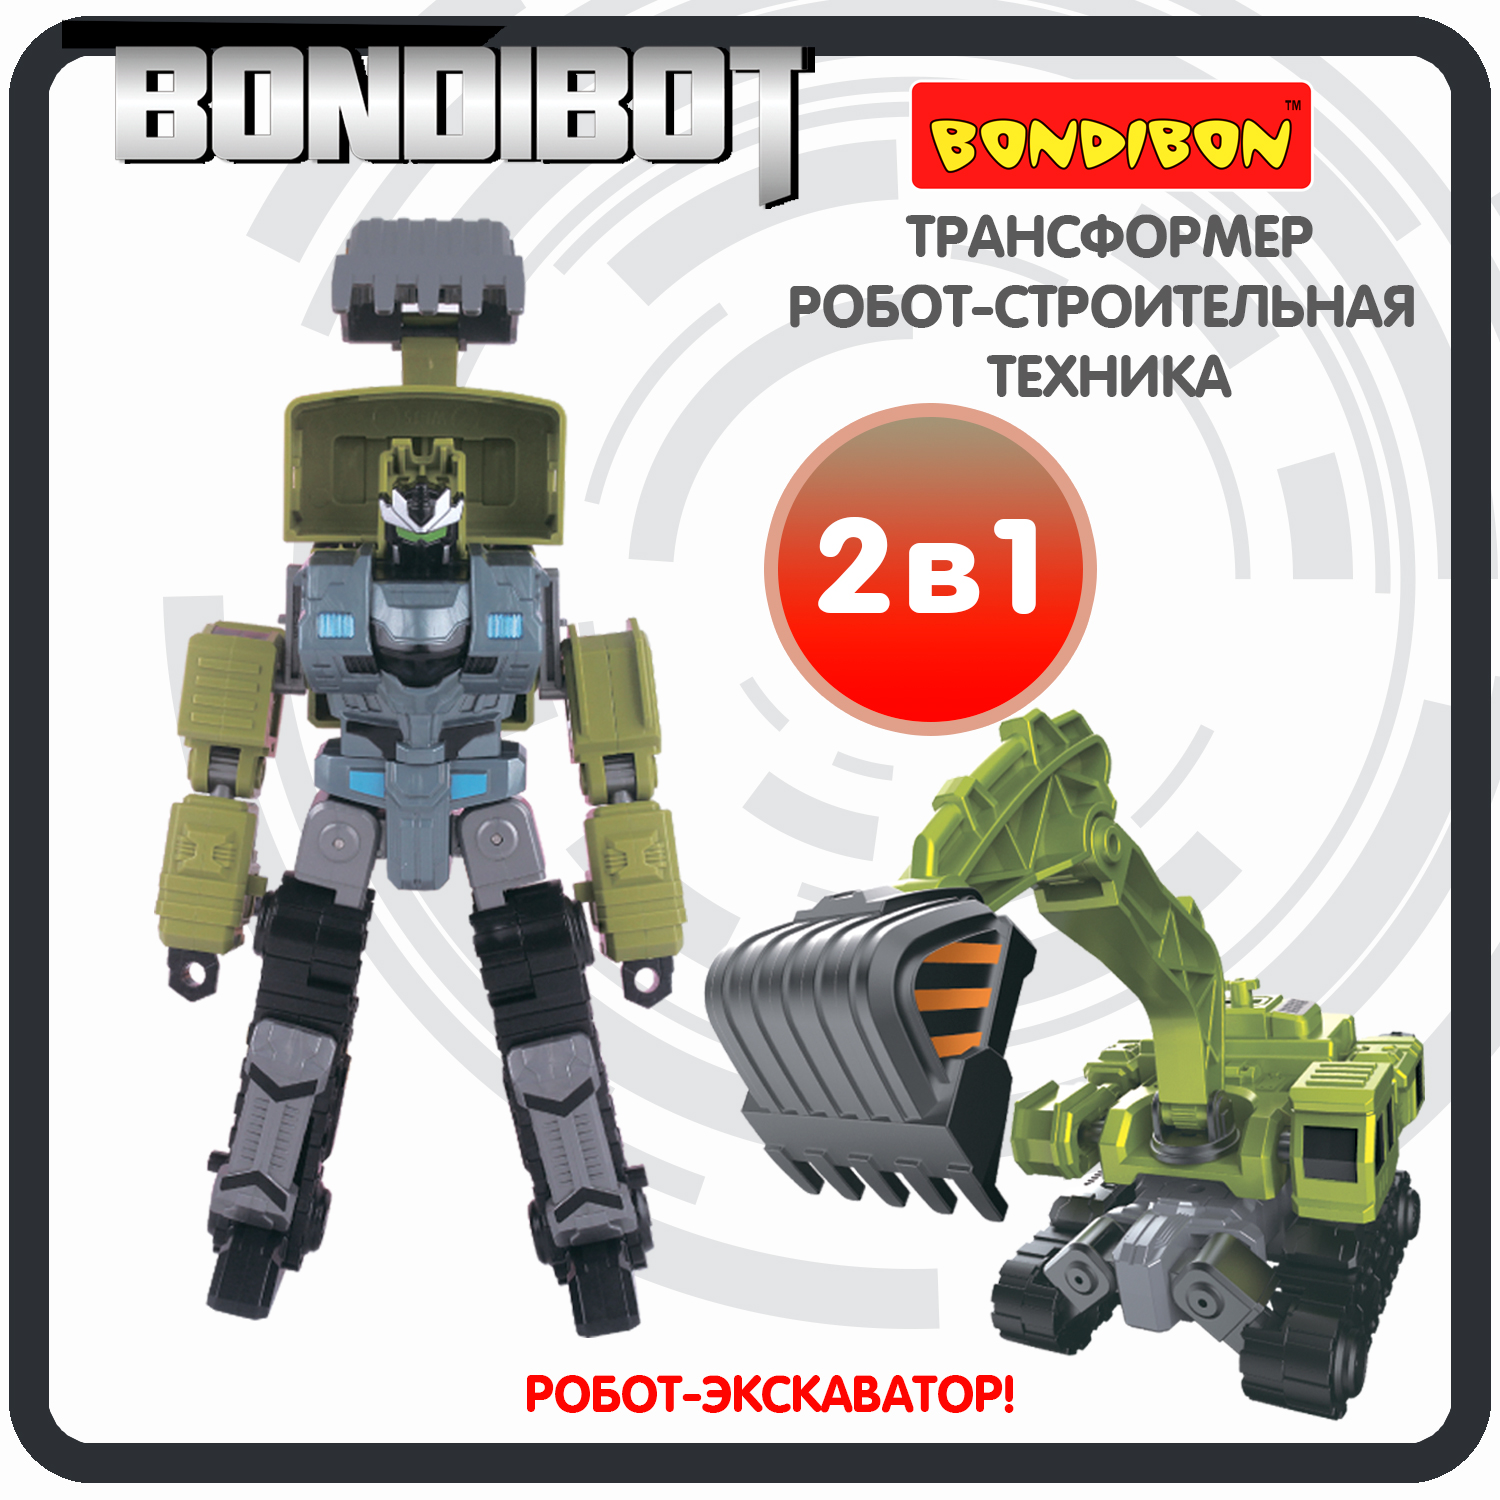 Трансформер робот-строительная техника, 2в1 BONDIBOT Bondibon, экскаватор / ВВ6054 трансформер робот строительная техника 2в1 bondibot bondibon бульдозер вв6053